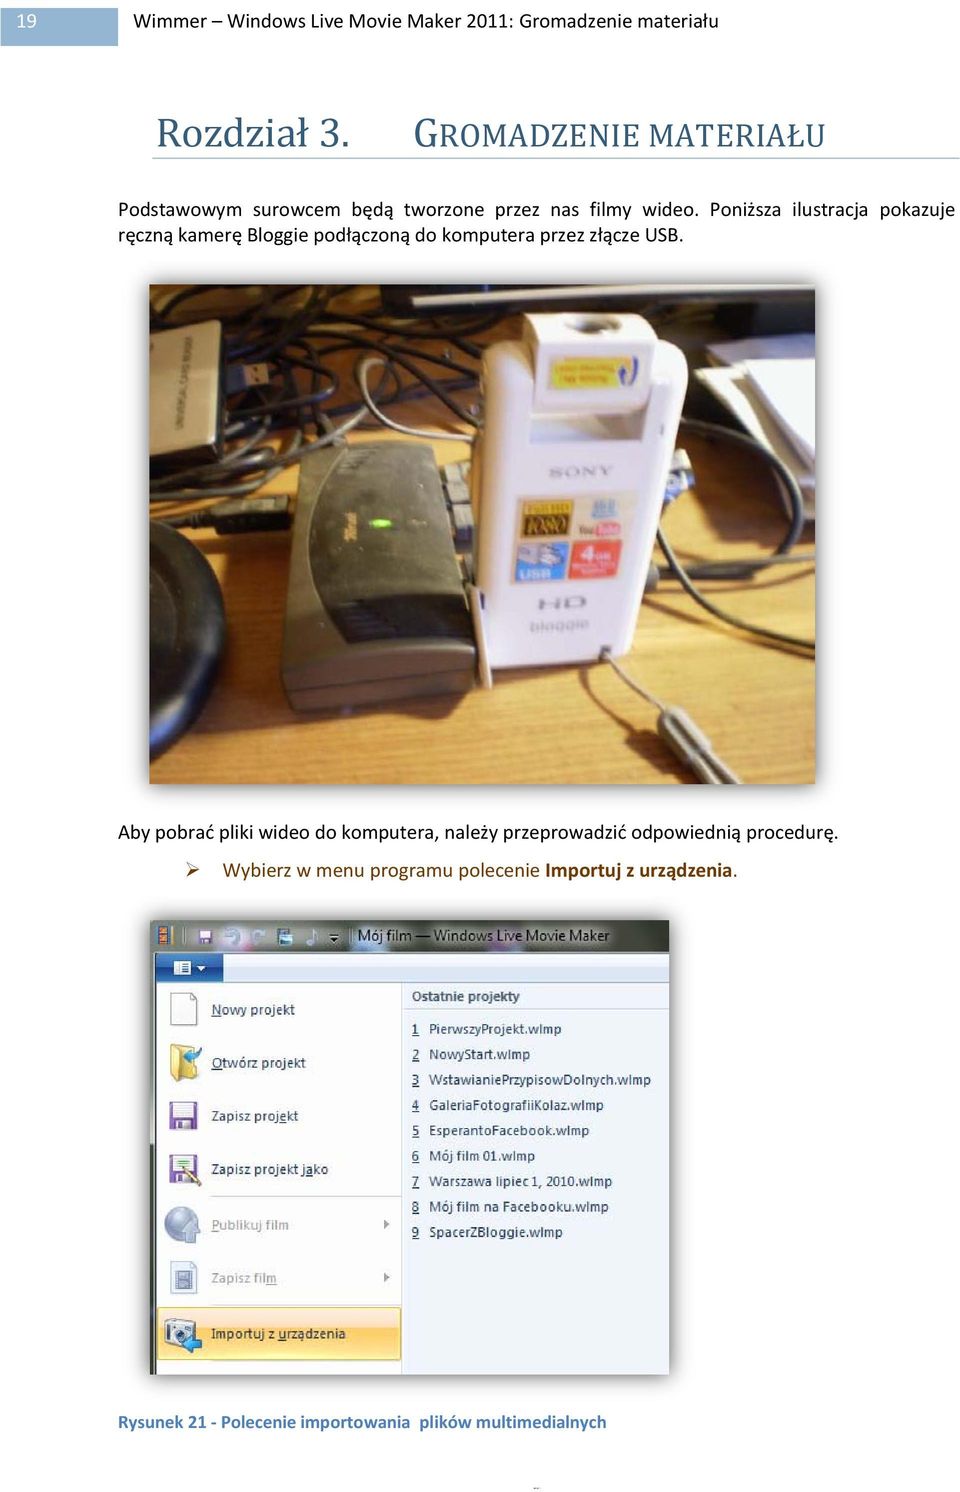 Poniższa ilustracja pokazuje ręczną kamerę Bloggie podłączoną do komputera przez złącze USB.